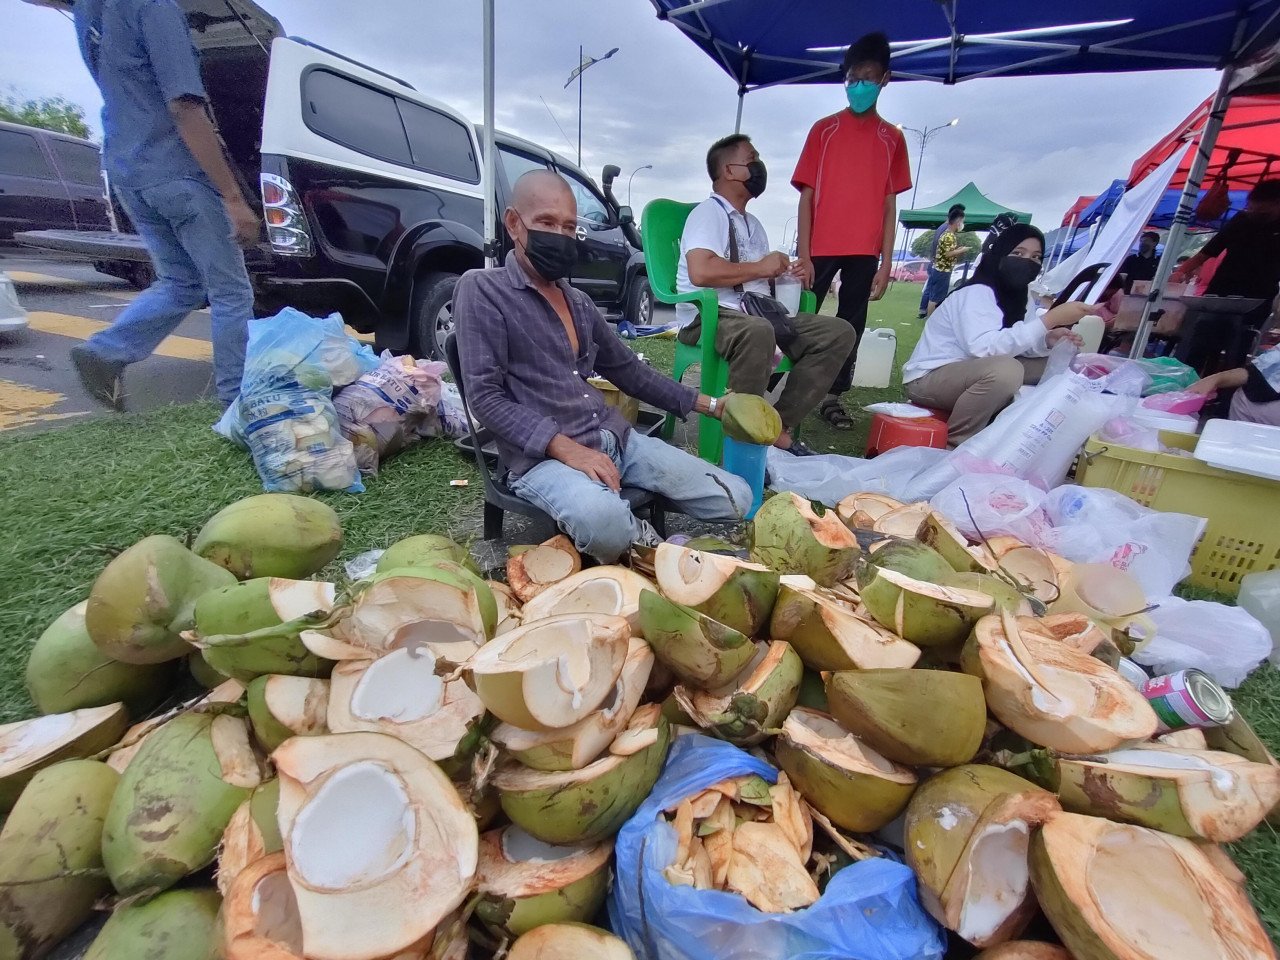 Penjual air kelapa Abraham Salleh menjual 60 paket air kelapa di bazar Ramadan pekan Sandakan dalam masa dua jam sahaja. - Gambar oleh Rebecca Chong